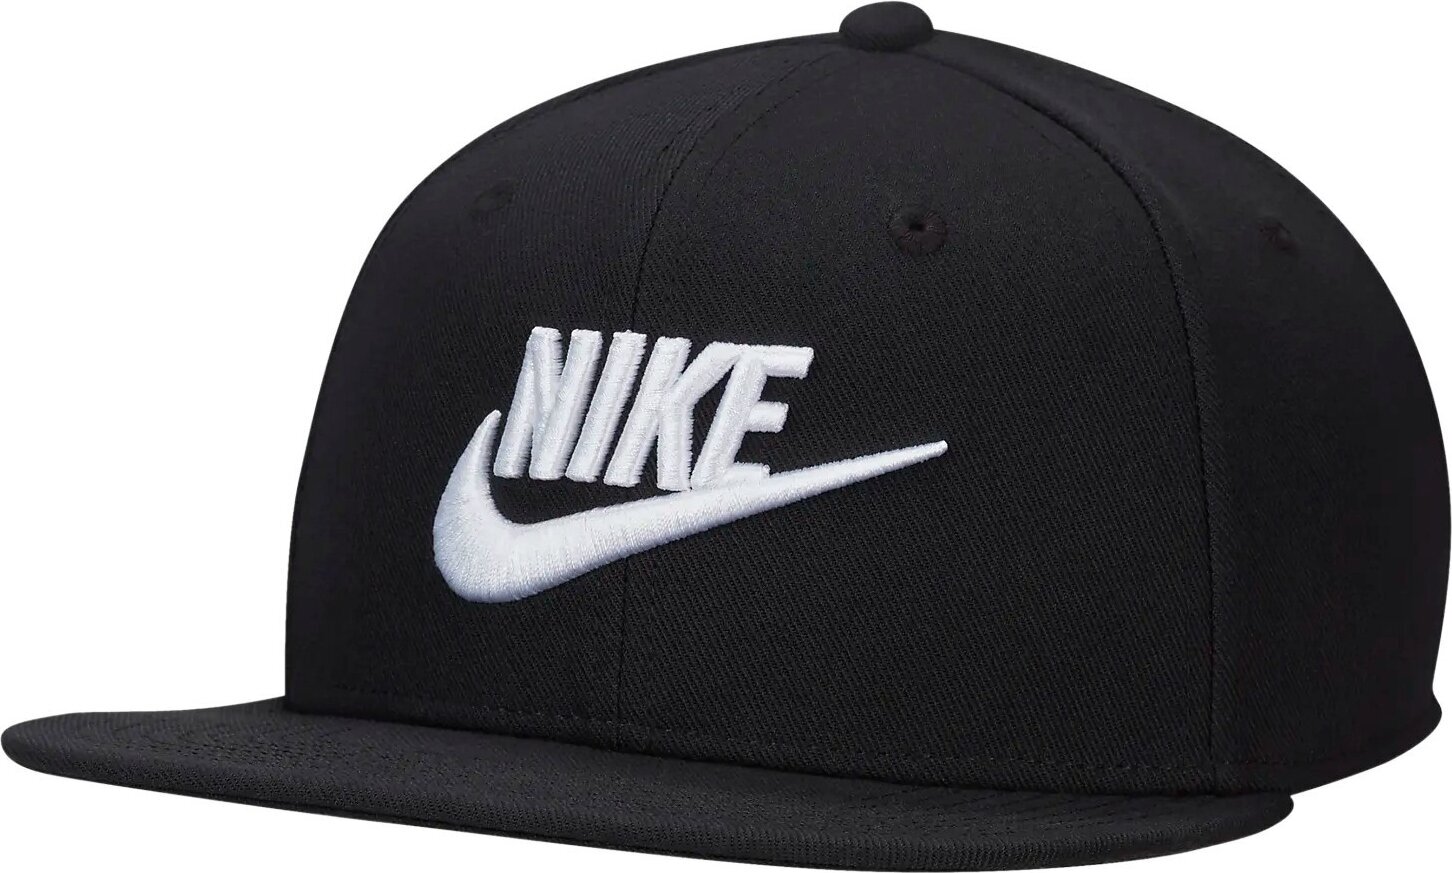 Mütze Nike Dri-Fit Pro Cap Black/Black/Black/White M/L